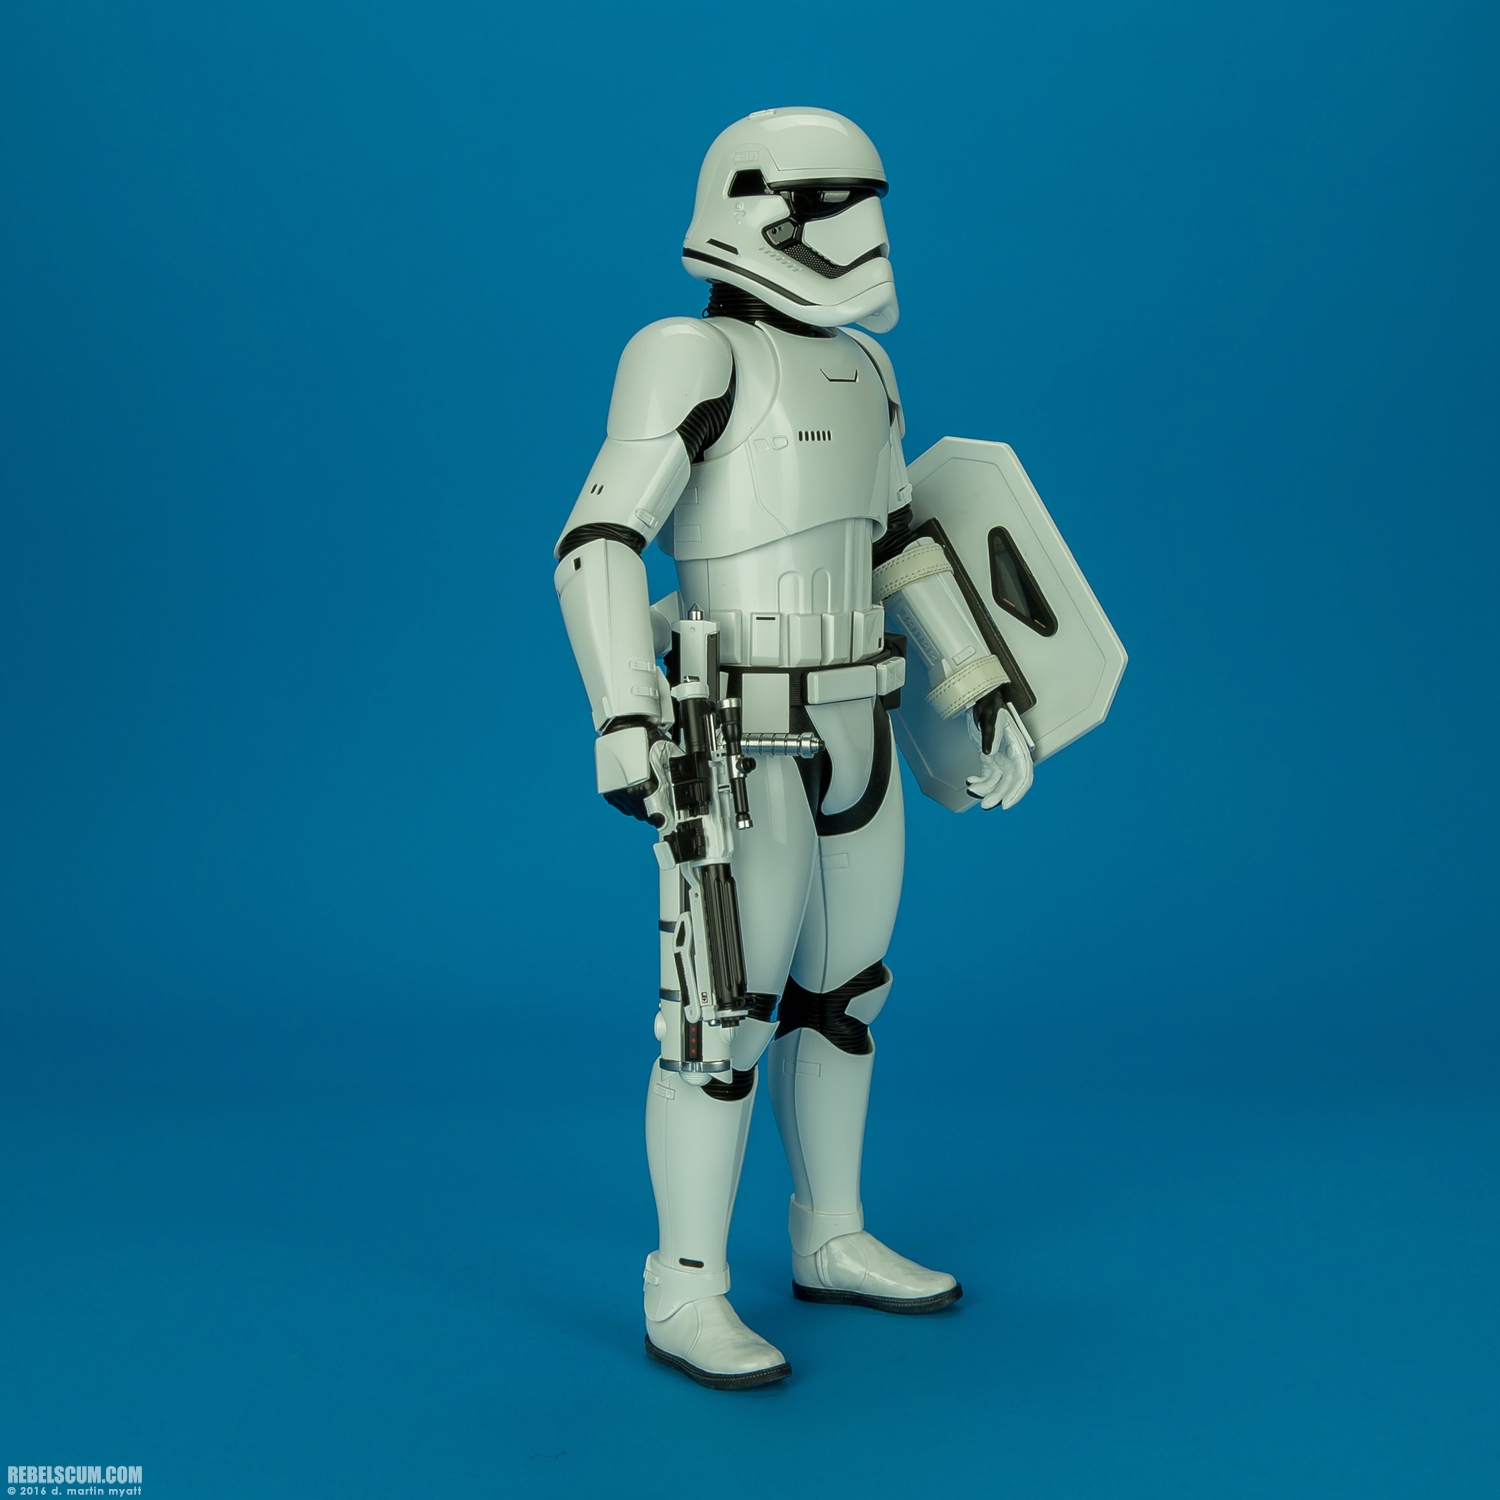 MMS346-Finn-First-Order-Riot-control-Stormtrooper-Hot-Toys-032.jpg